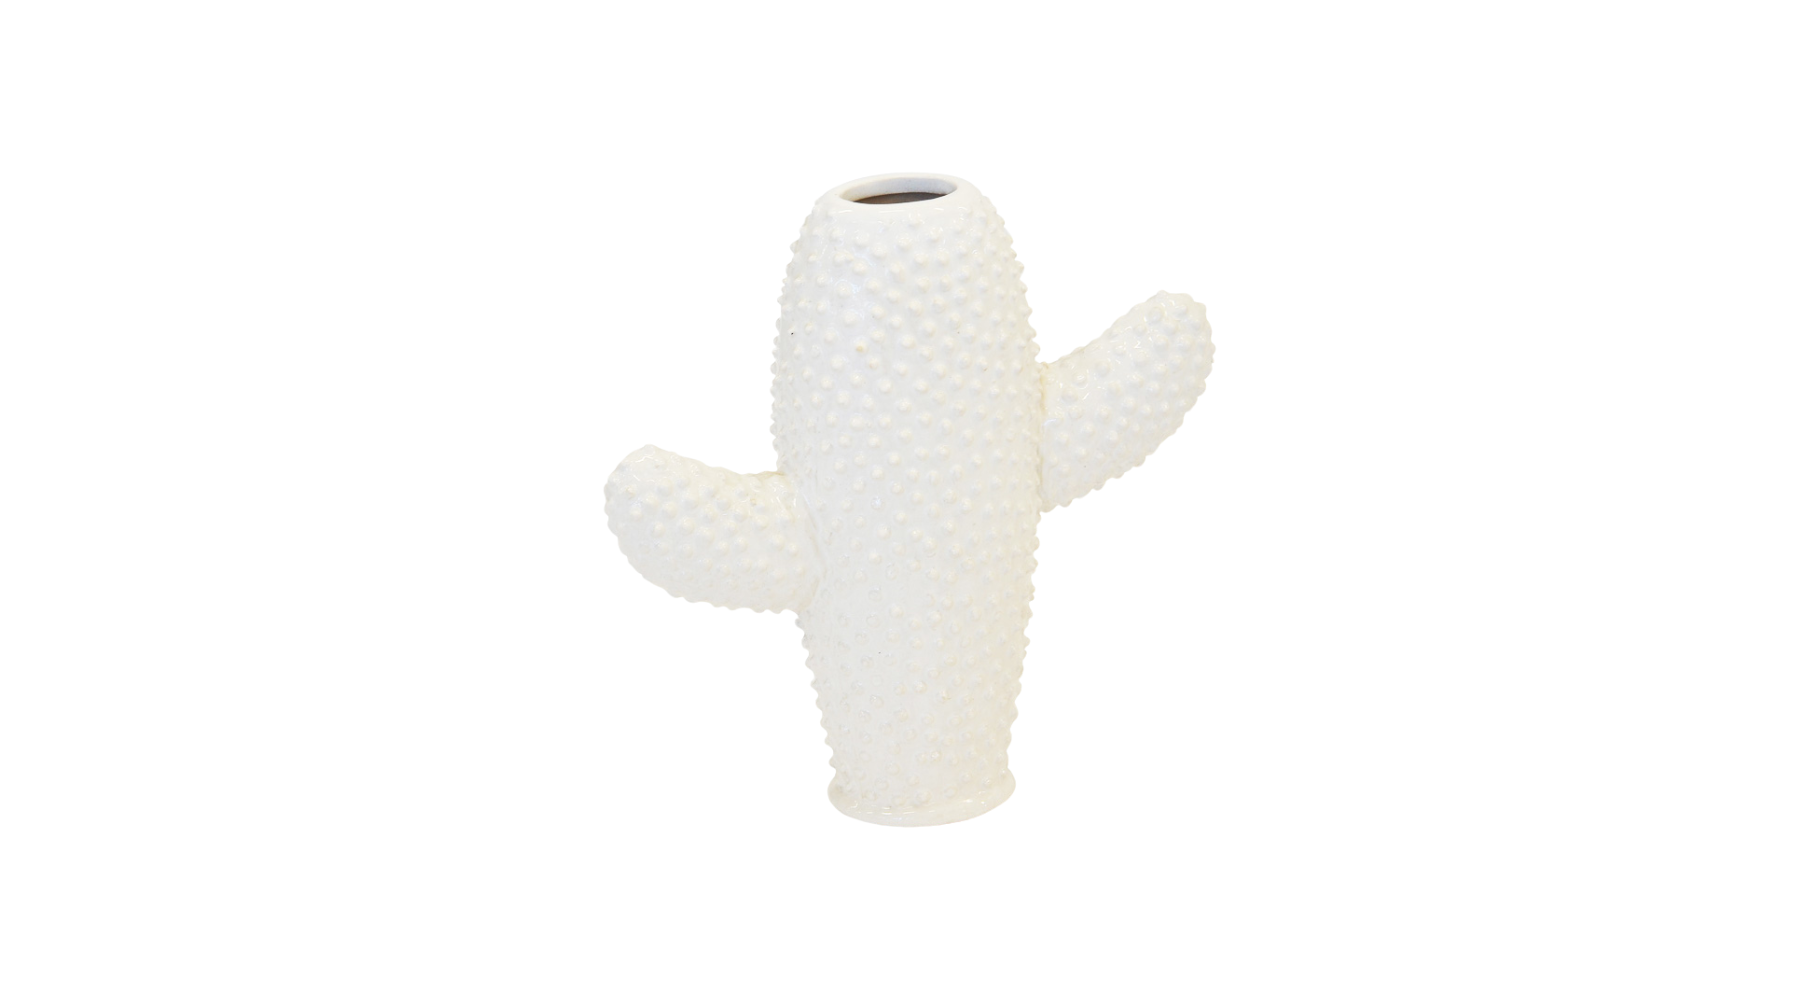 Cactus Vase Small